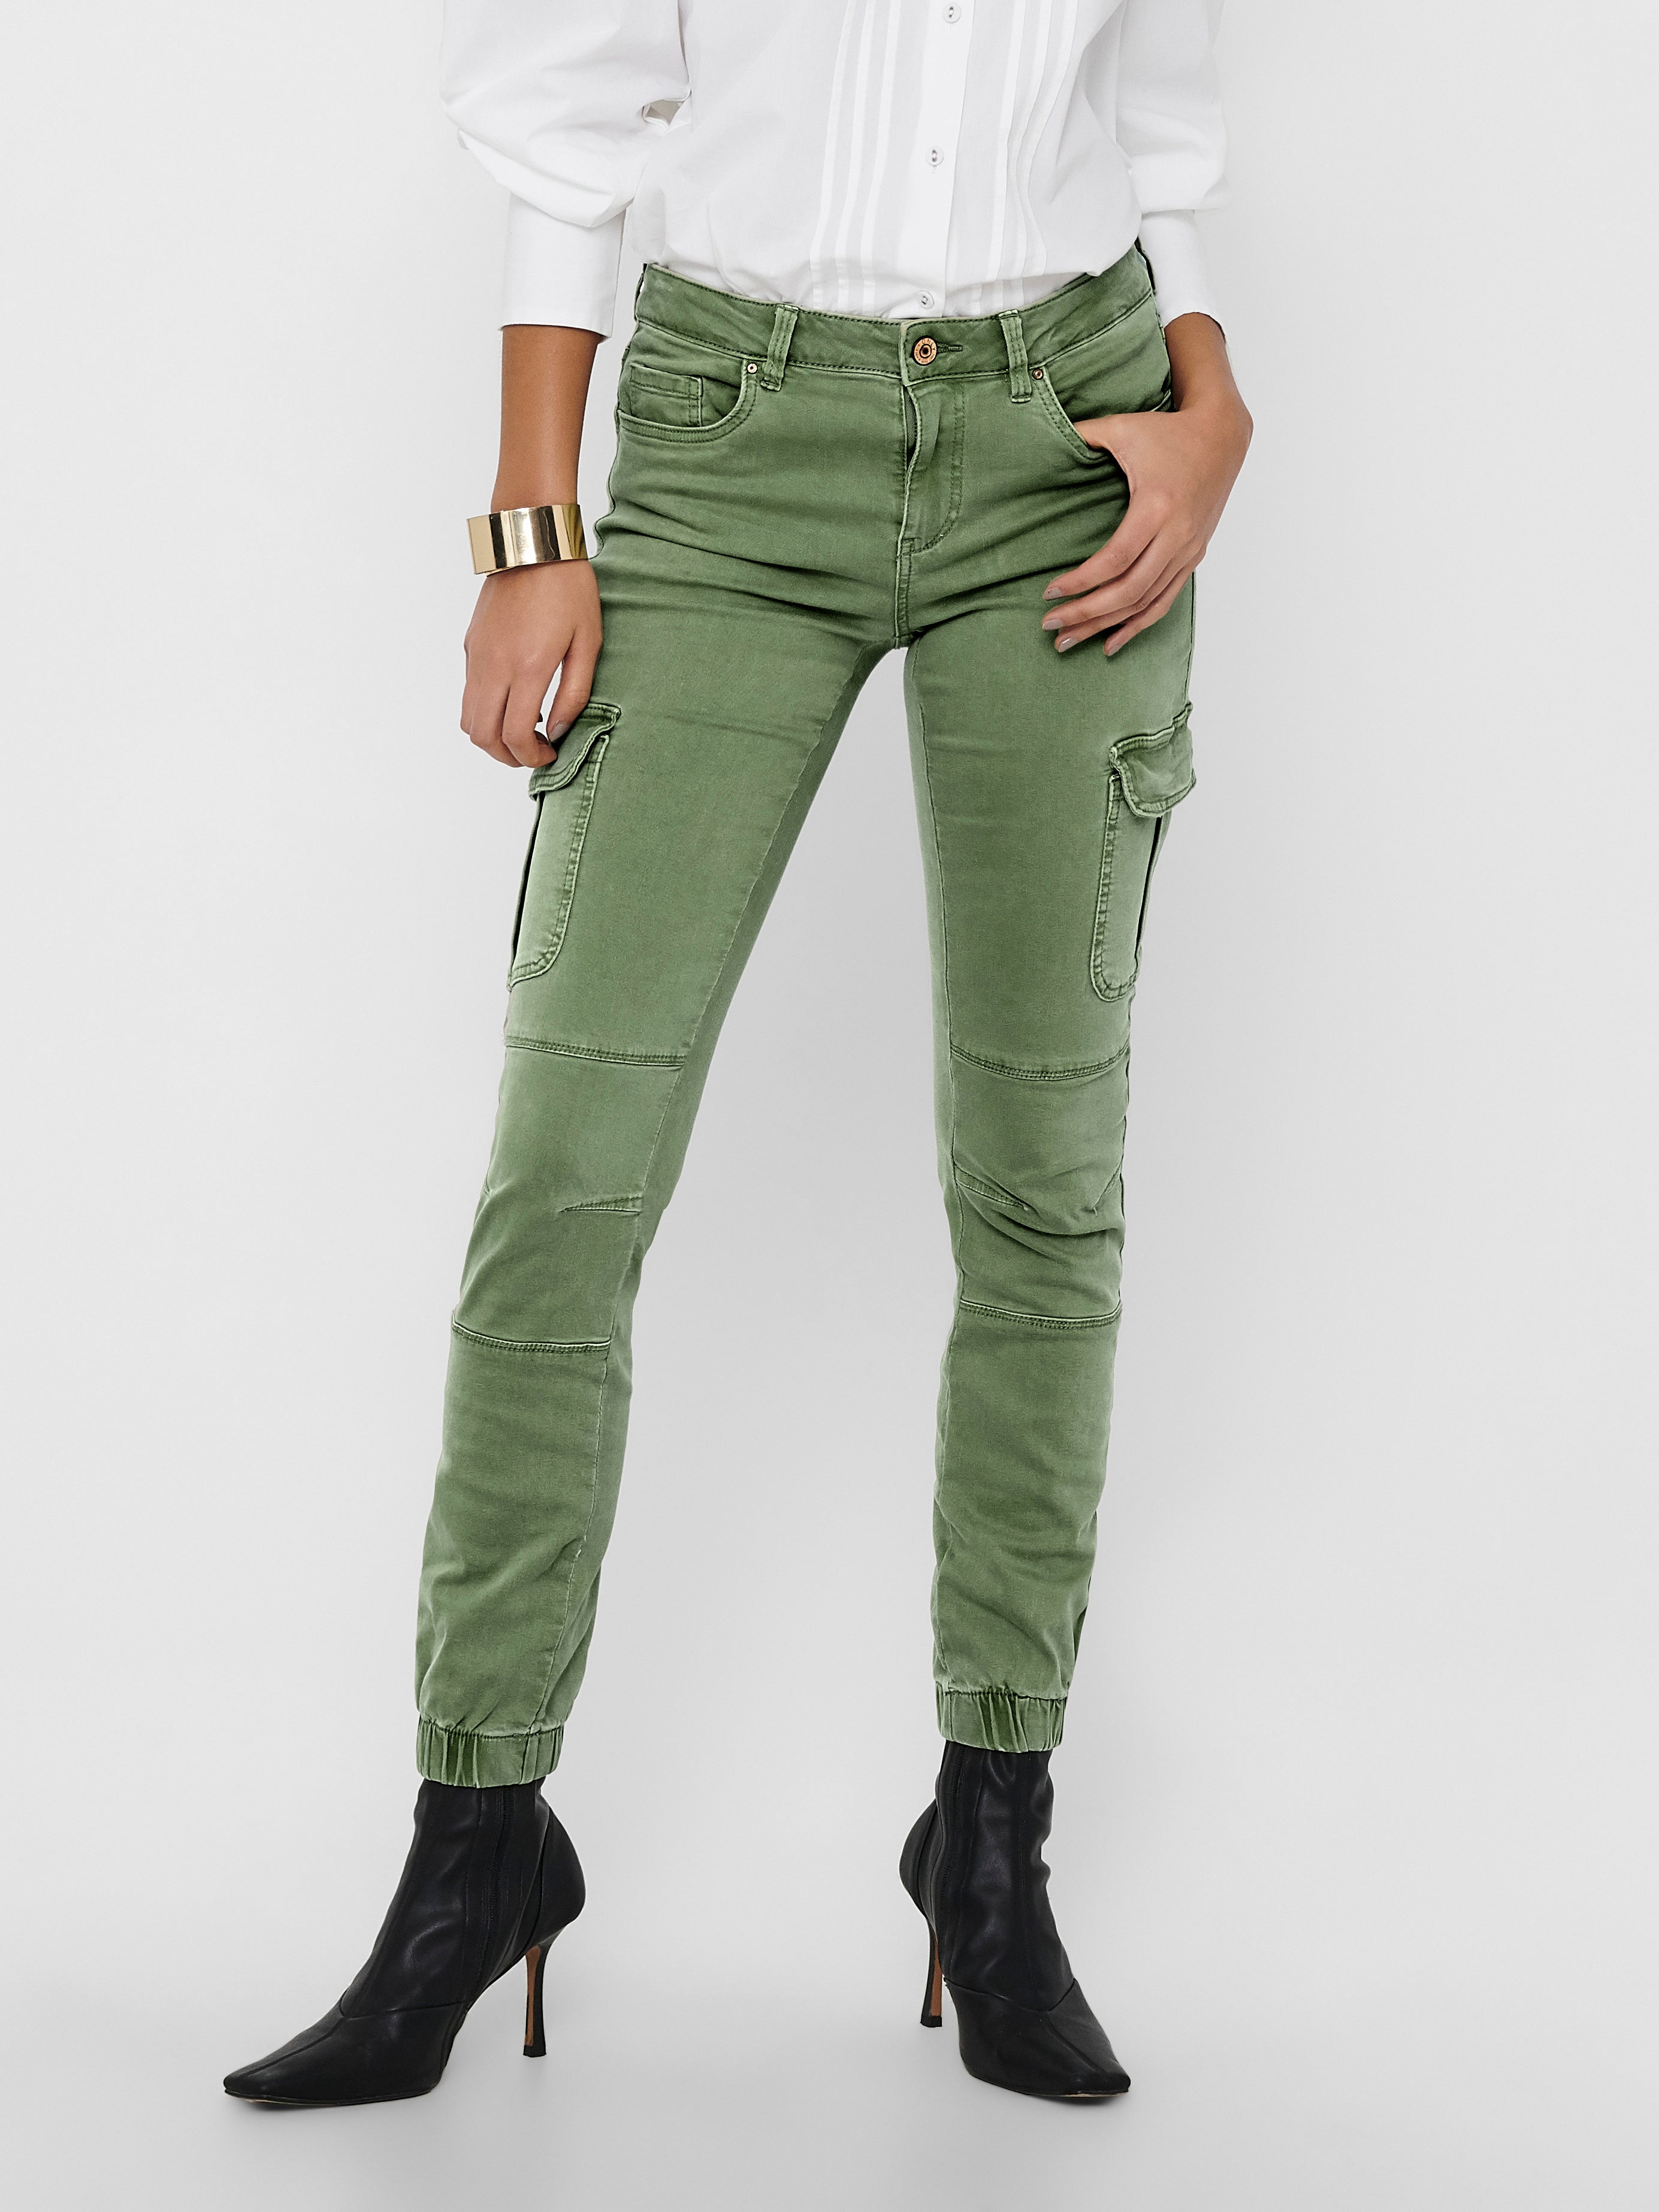 CAbi Skinny Cargo Pants for Women | Mercari